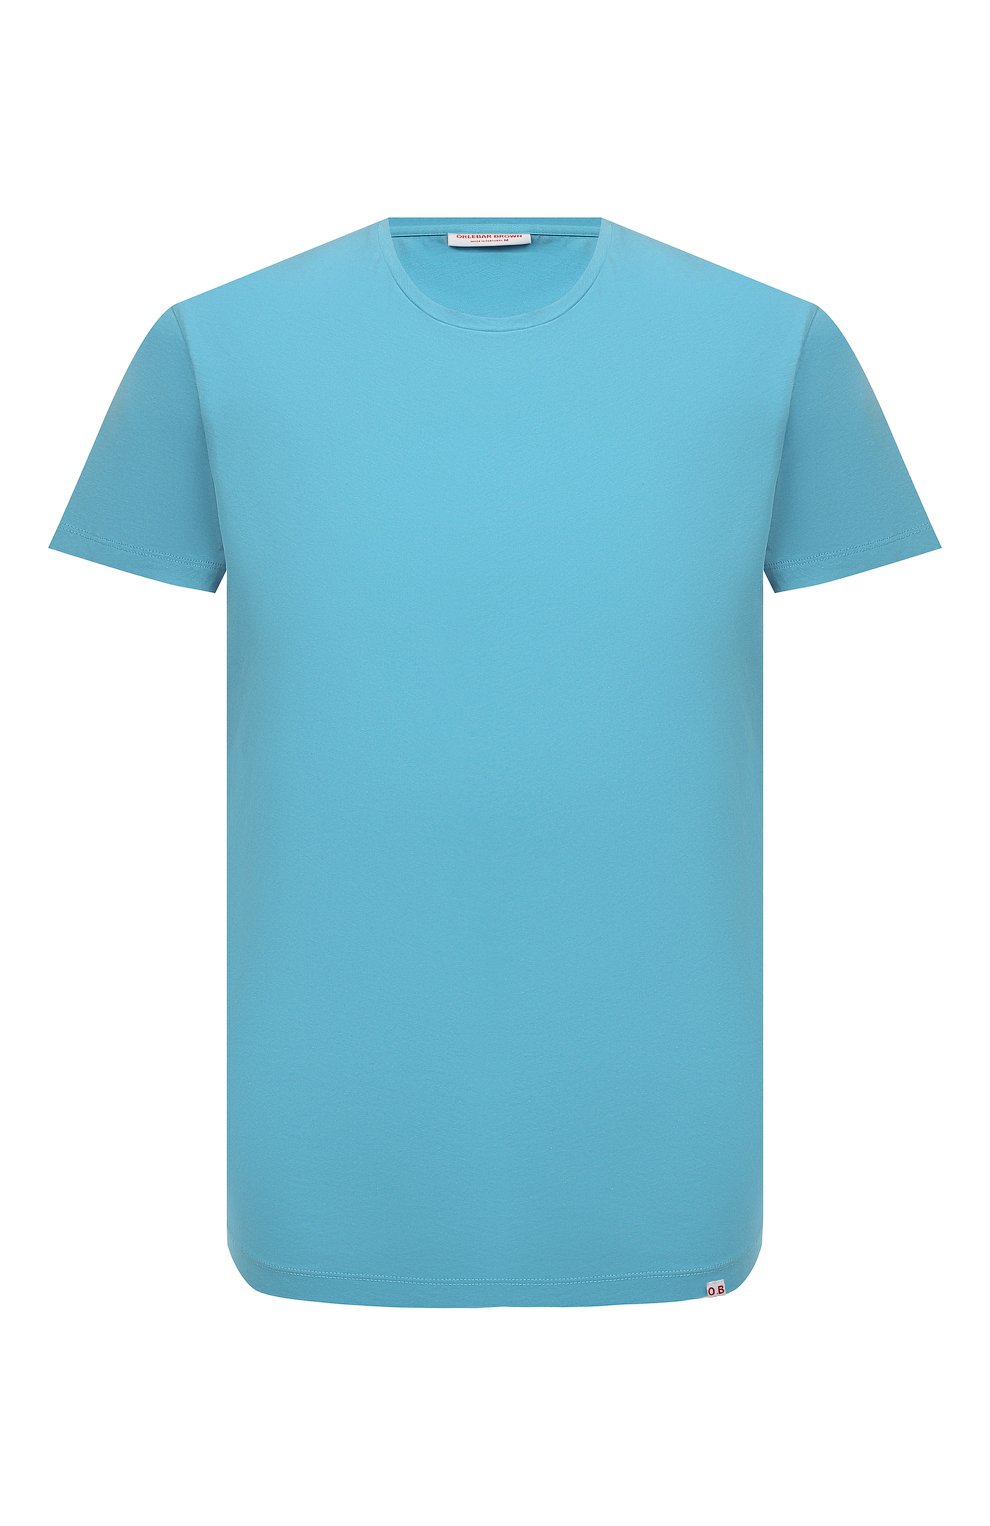 Мужская хлопковая футболка ORLEBAR BROWN голубого цвета, арт. 274739 | Фото 1 (Мужское Кросс-КТ: Футболка-пляж; Принт: Без принта; Рукава: Короткие; Длина (для топов): Стандартные; Материал внешний: Хлопок; Стили: Кэжуэл)